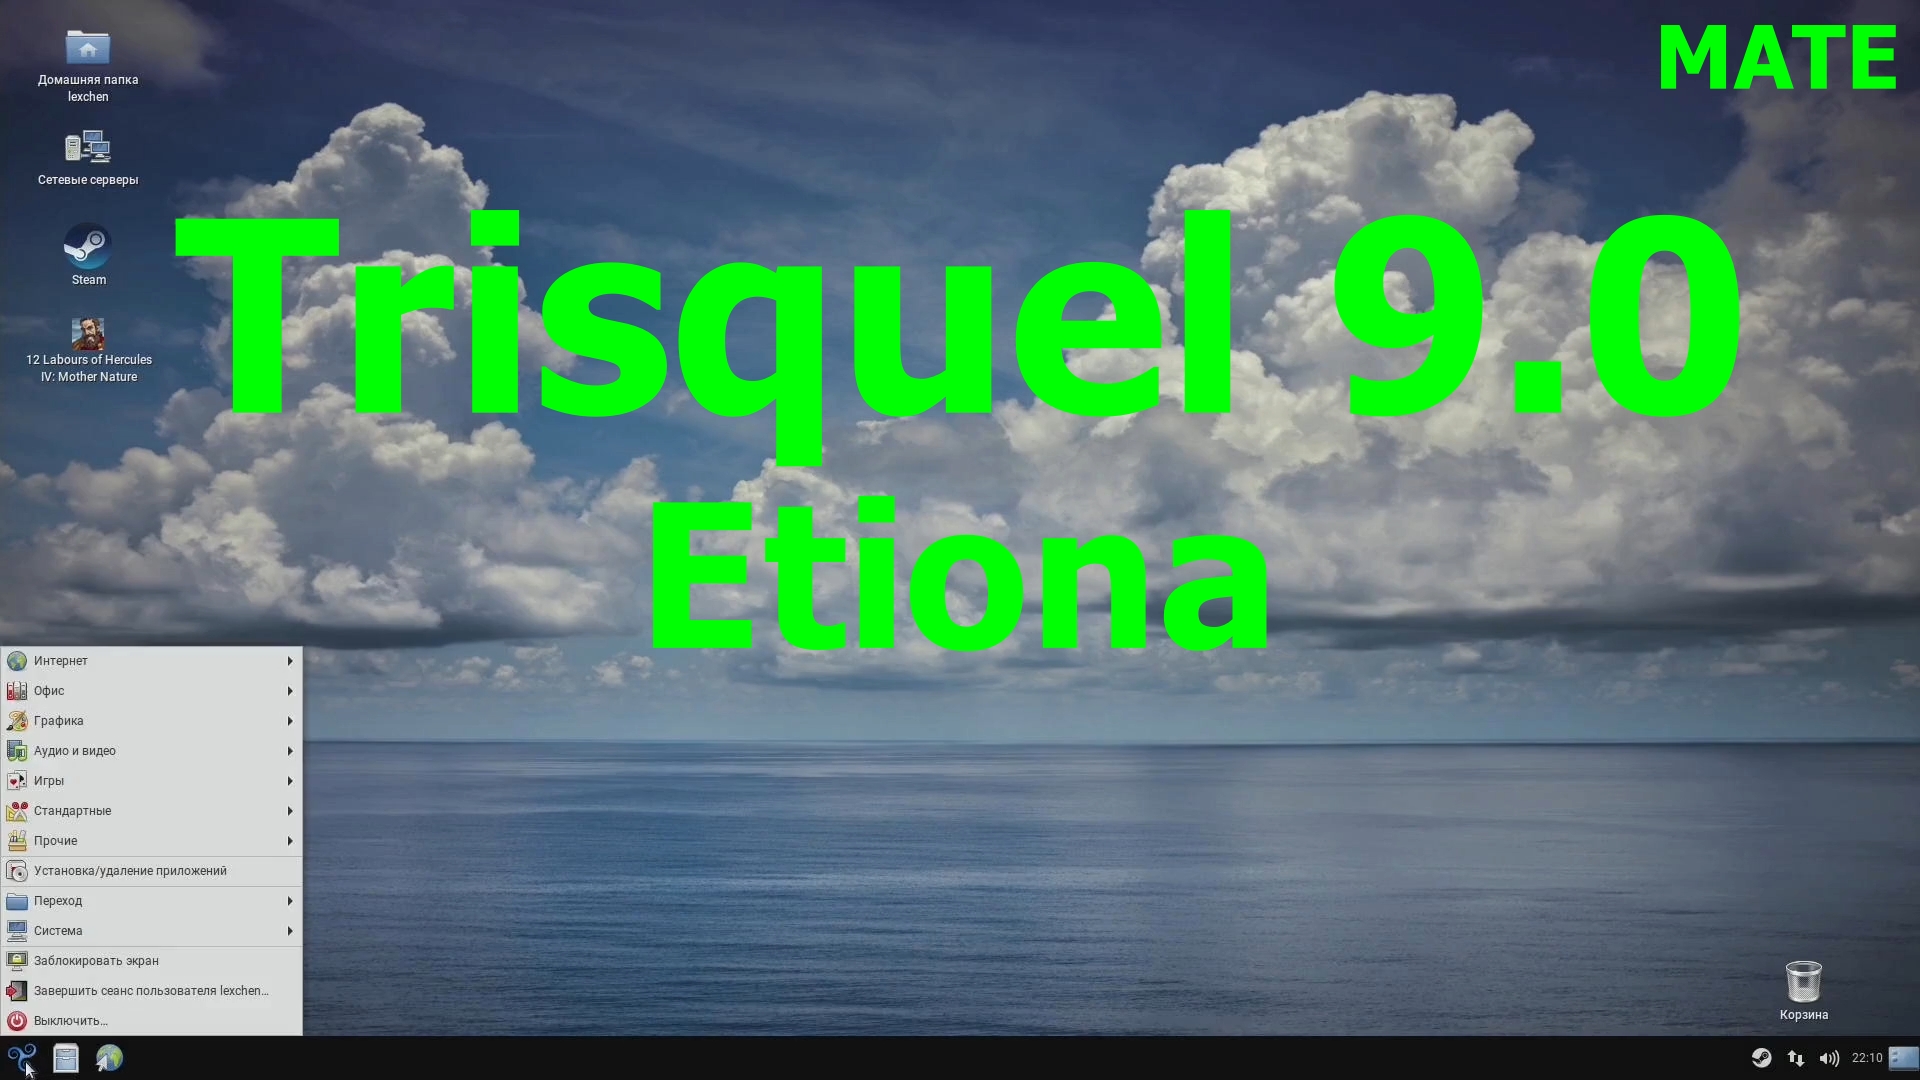 Дистрибутив Trisquel 9.0 Etiona (MATE)  (Установка, обновление и первый взгляд) (Февраль 2021)